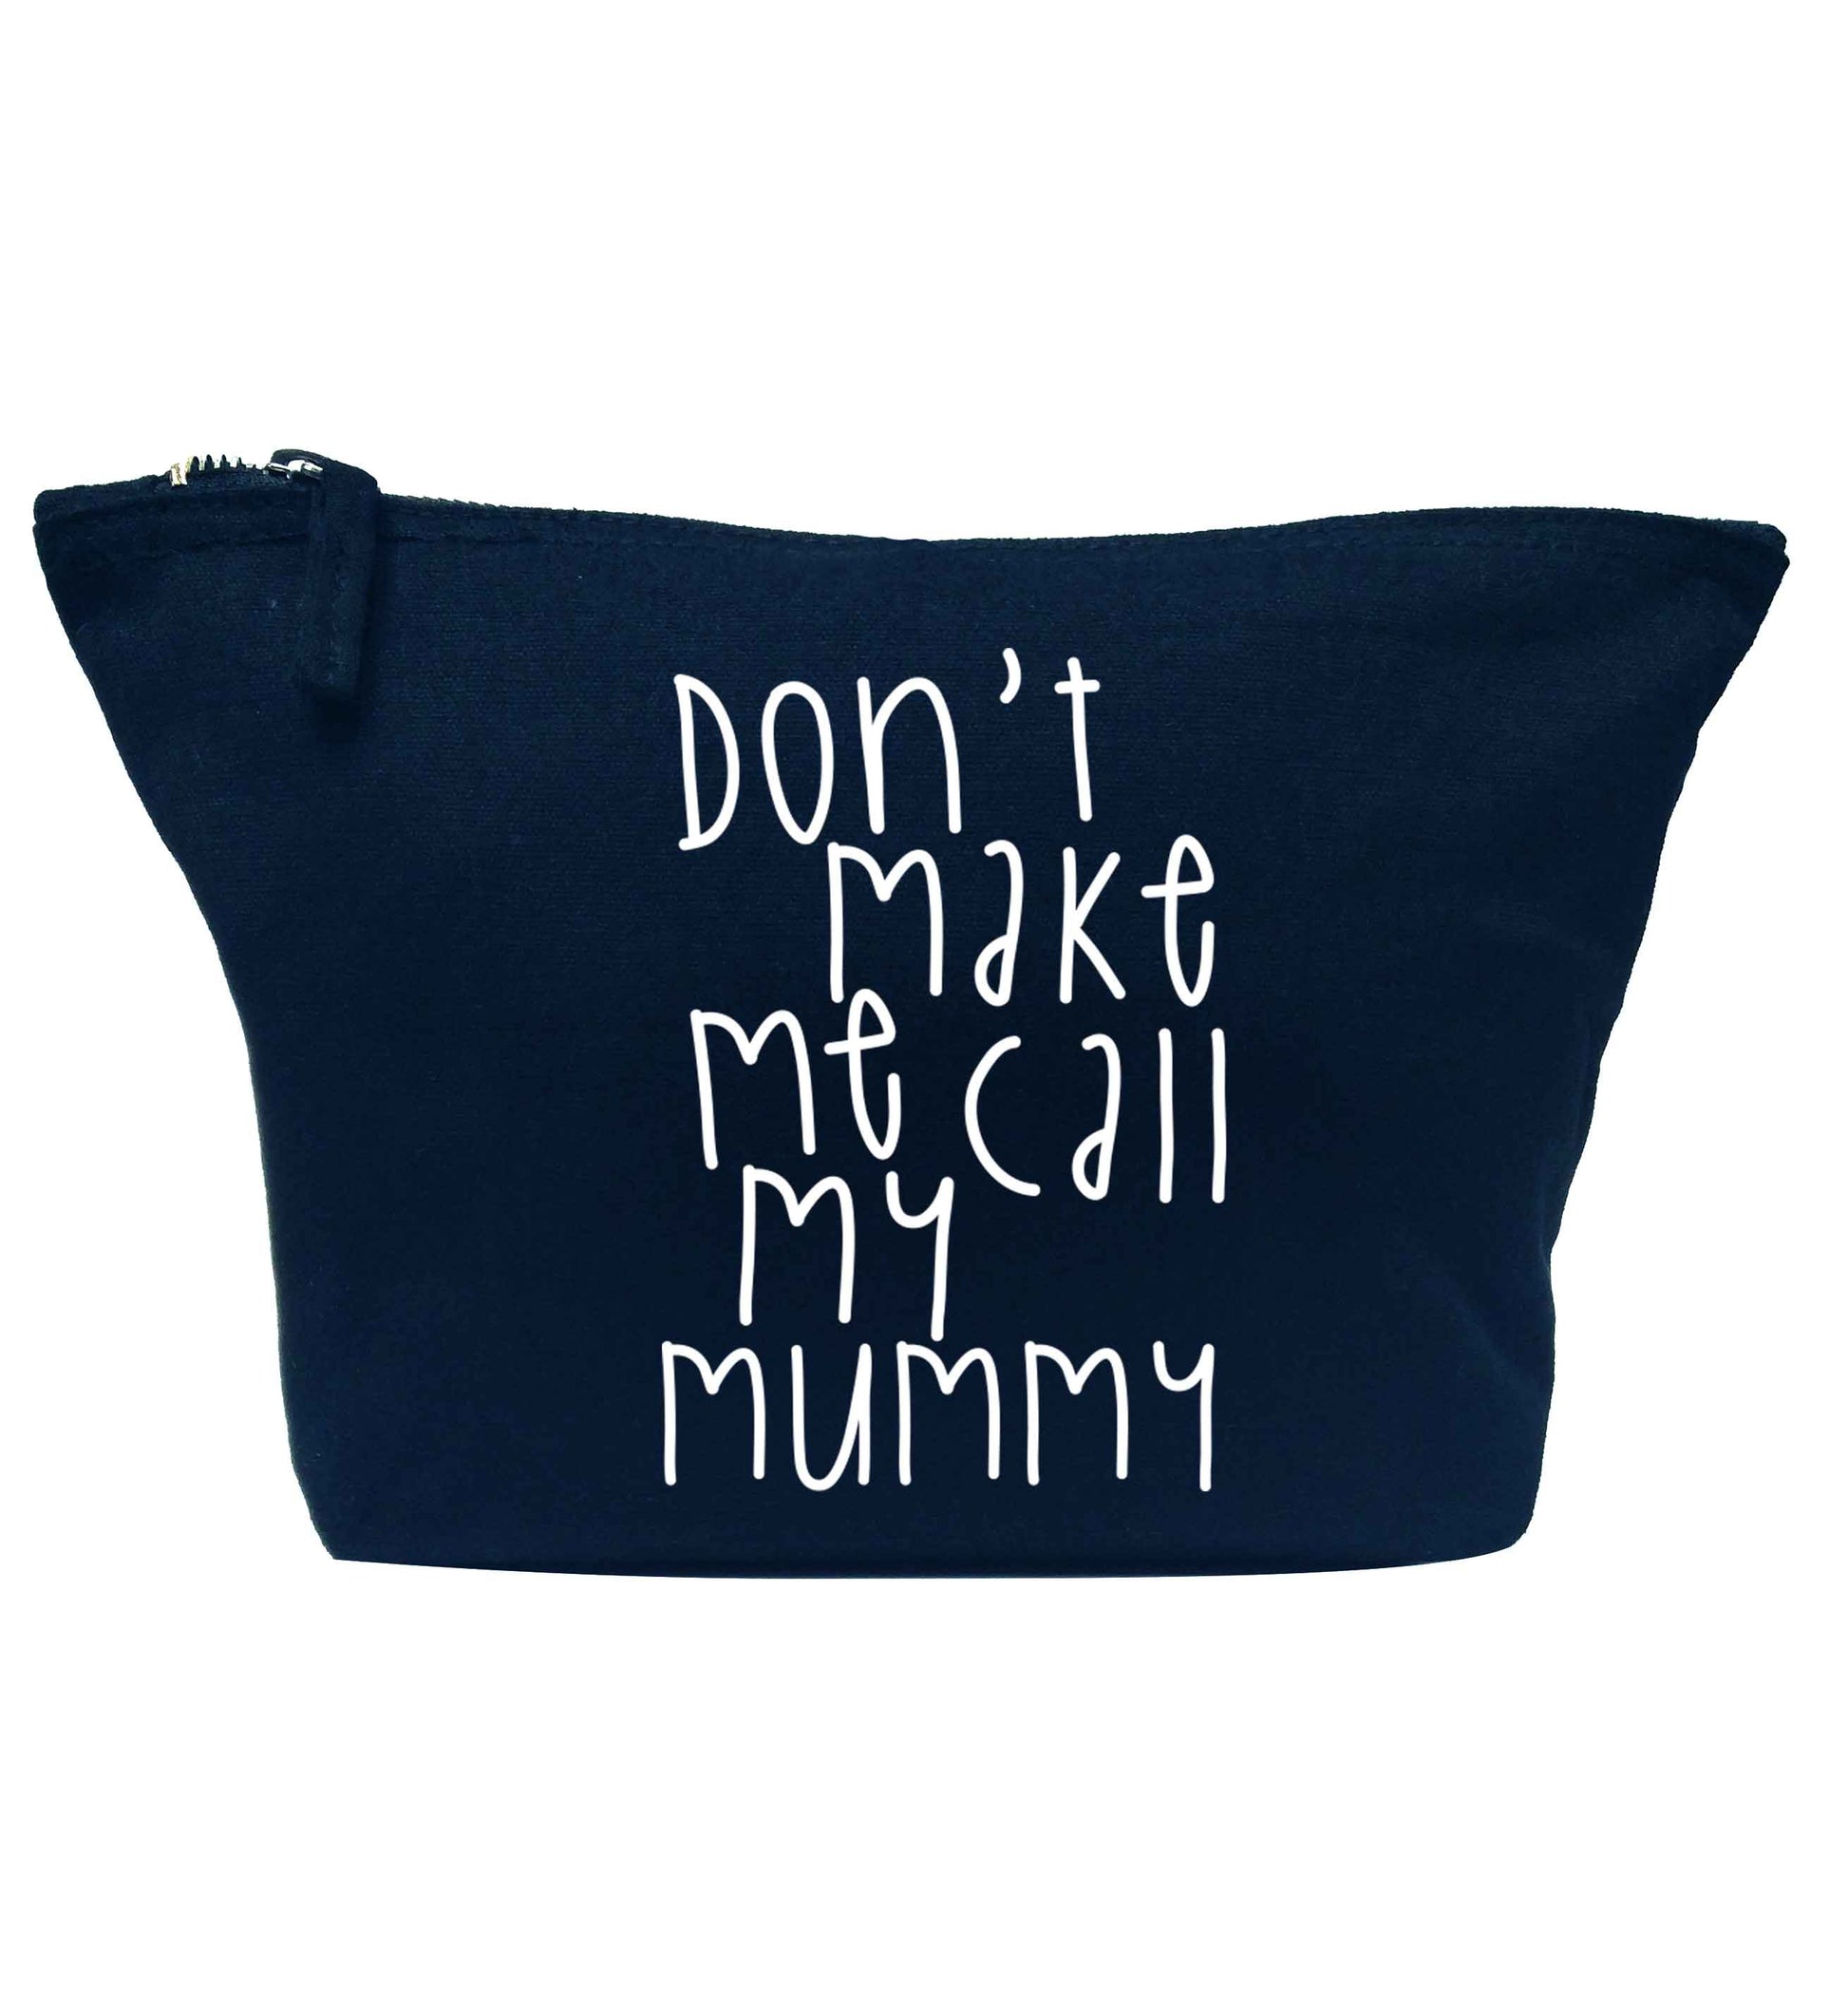 Don't make me call my mummy navy makeup bag